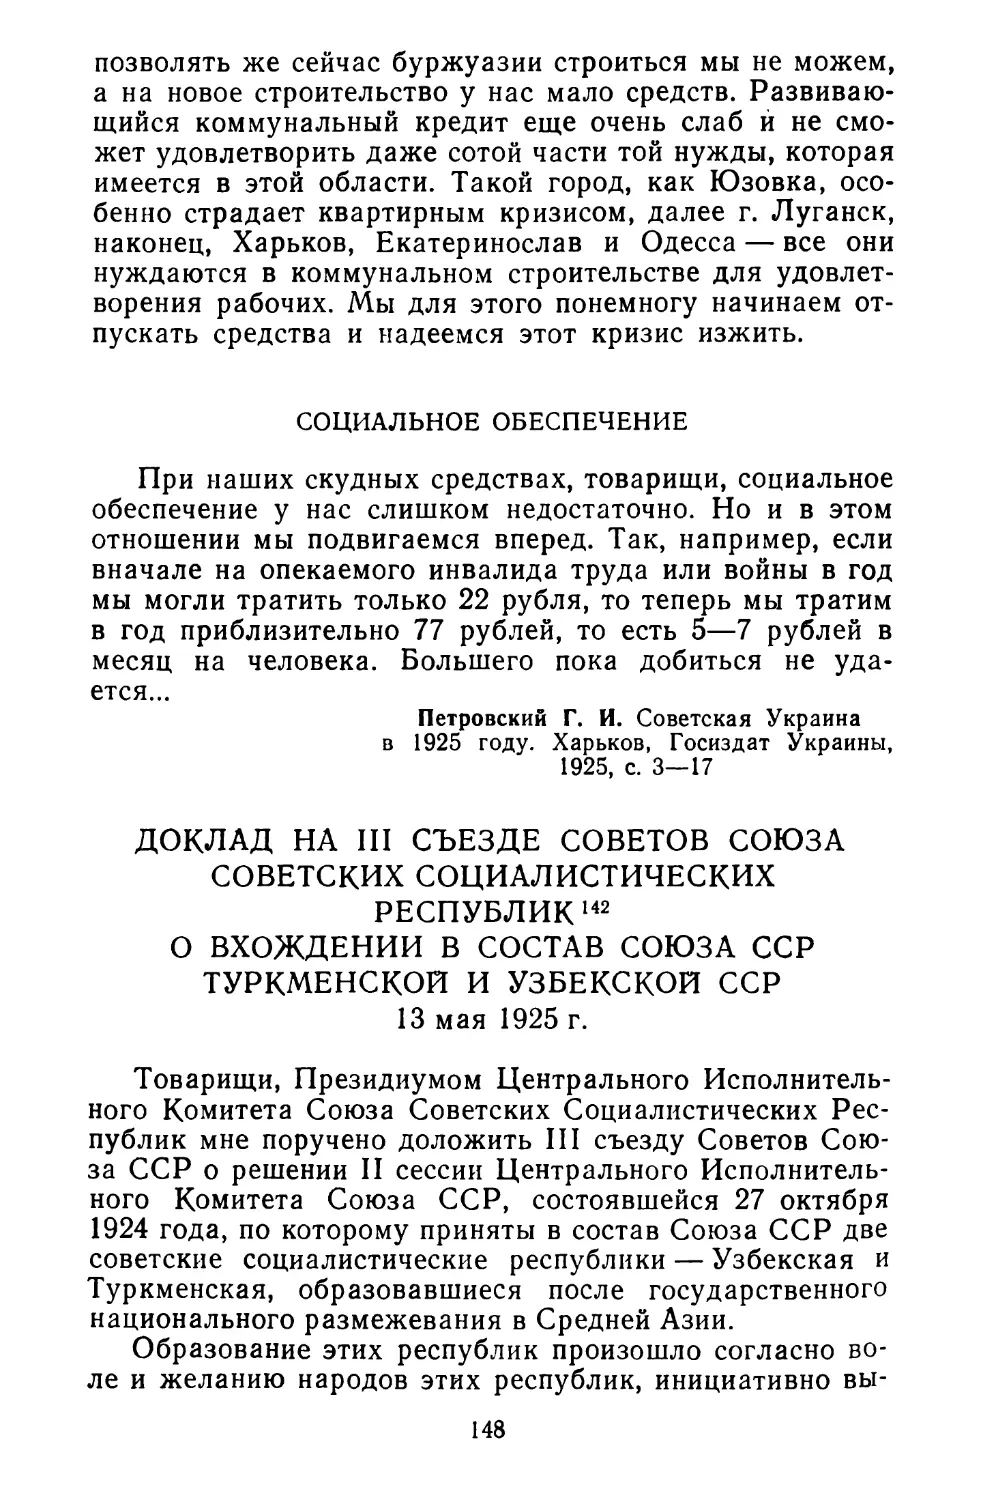 Доклад на III съезде Советов Союза Советских Социалистических Республик о вхождении в состав Союза ССР Туркменской и Узбекской ССР. 13 мая 1925 г.